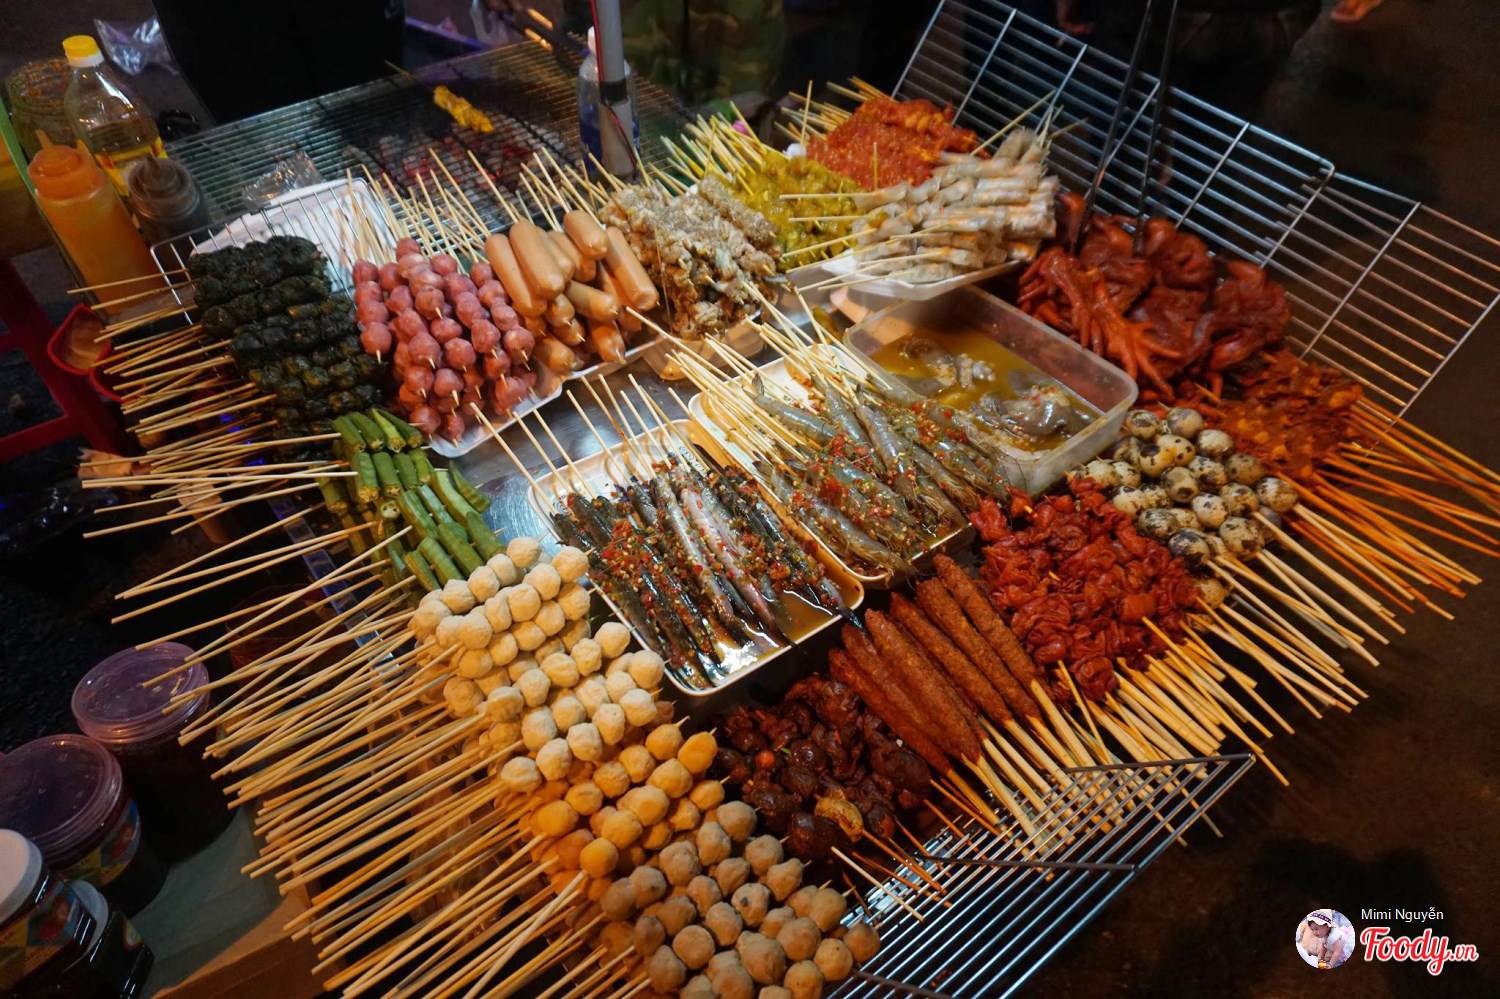 Khu chợ đêm tập trung đông đúc từ dọc cầu thang của khu Hòa Bình xuống chợ Đà Lạt, đặc biệt là các gian hàng đồ ăn rất nhộn nhịp. 